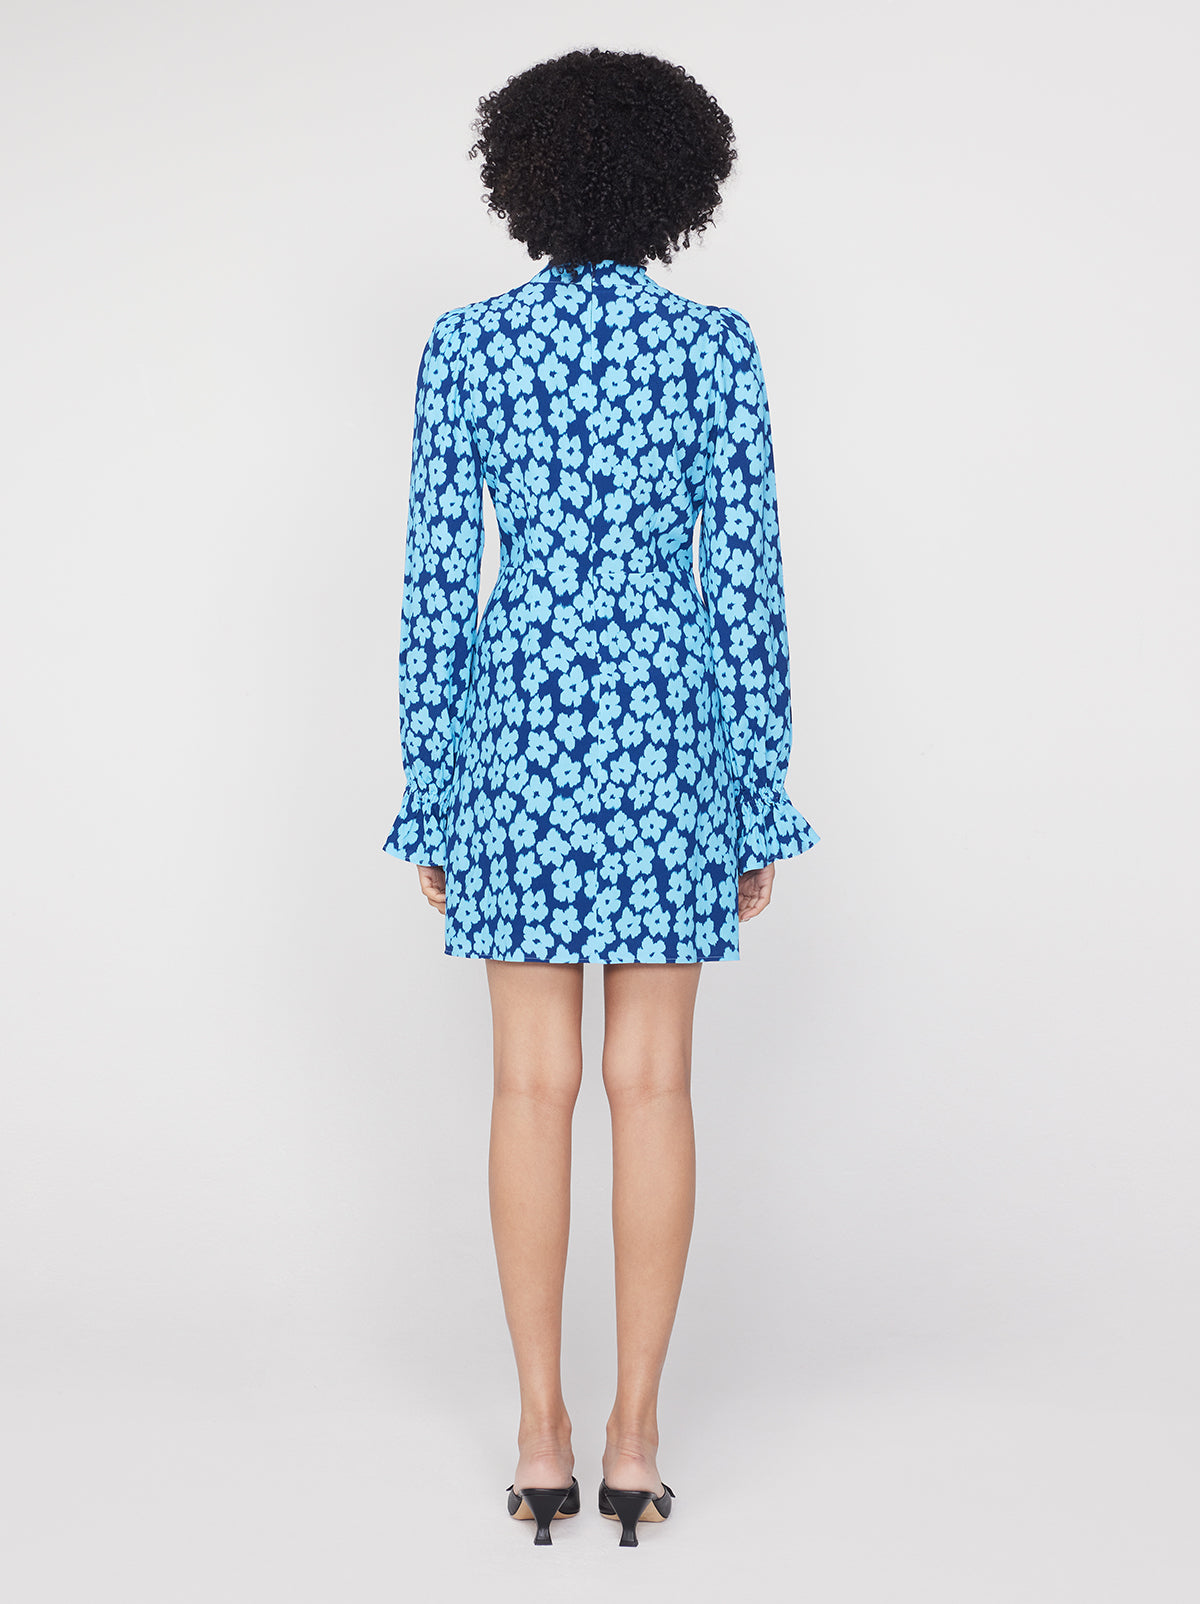 Valentina Blue Blurred Floral Mini Dress By KITRI Studio